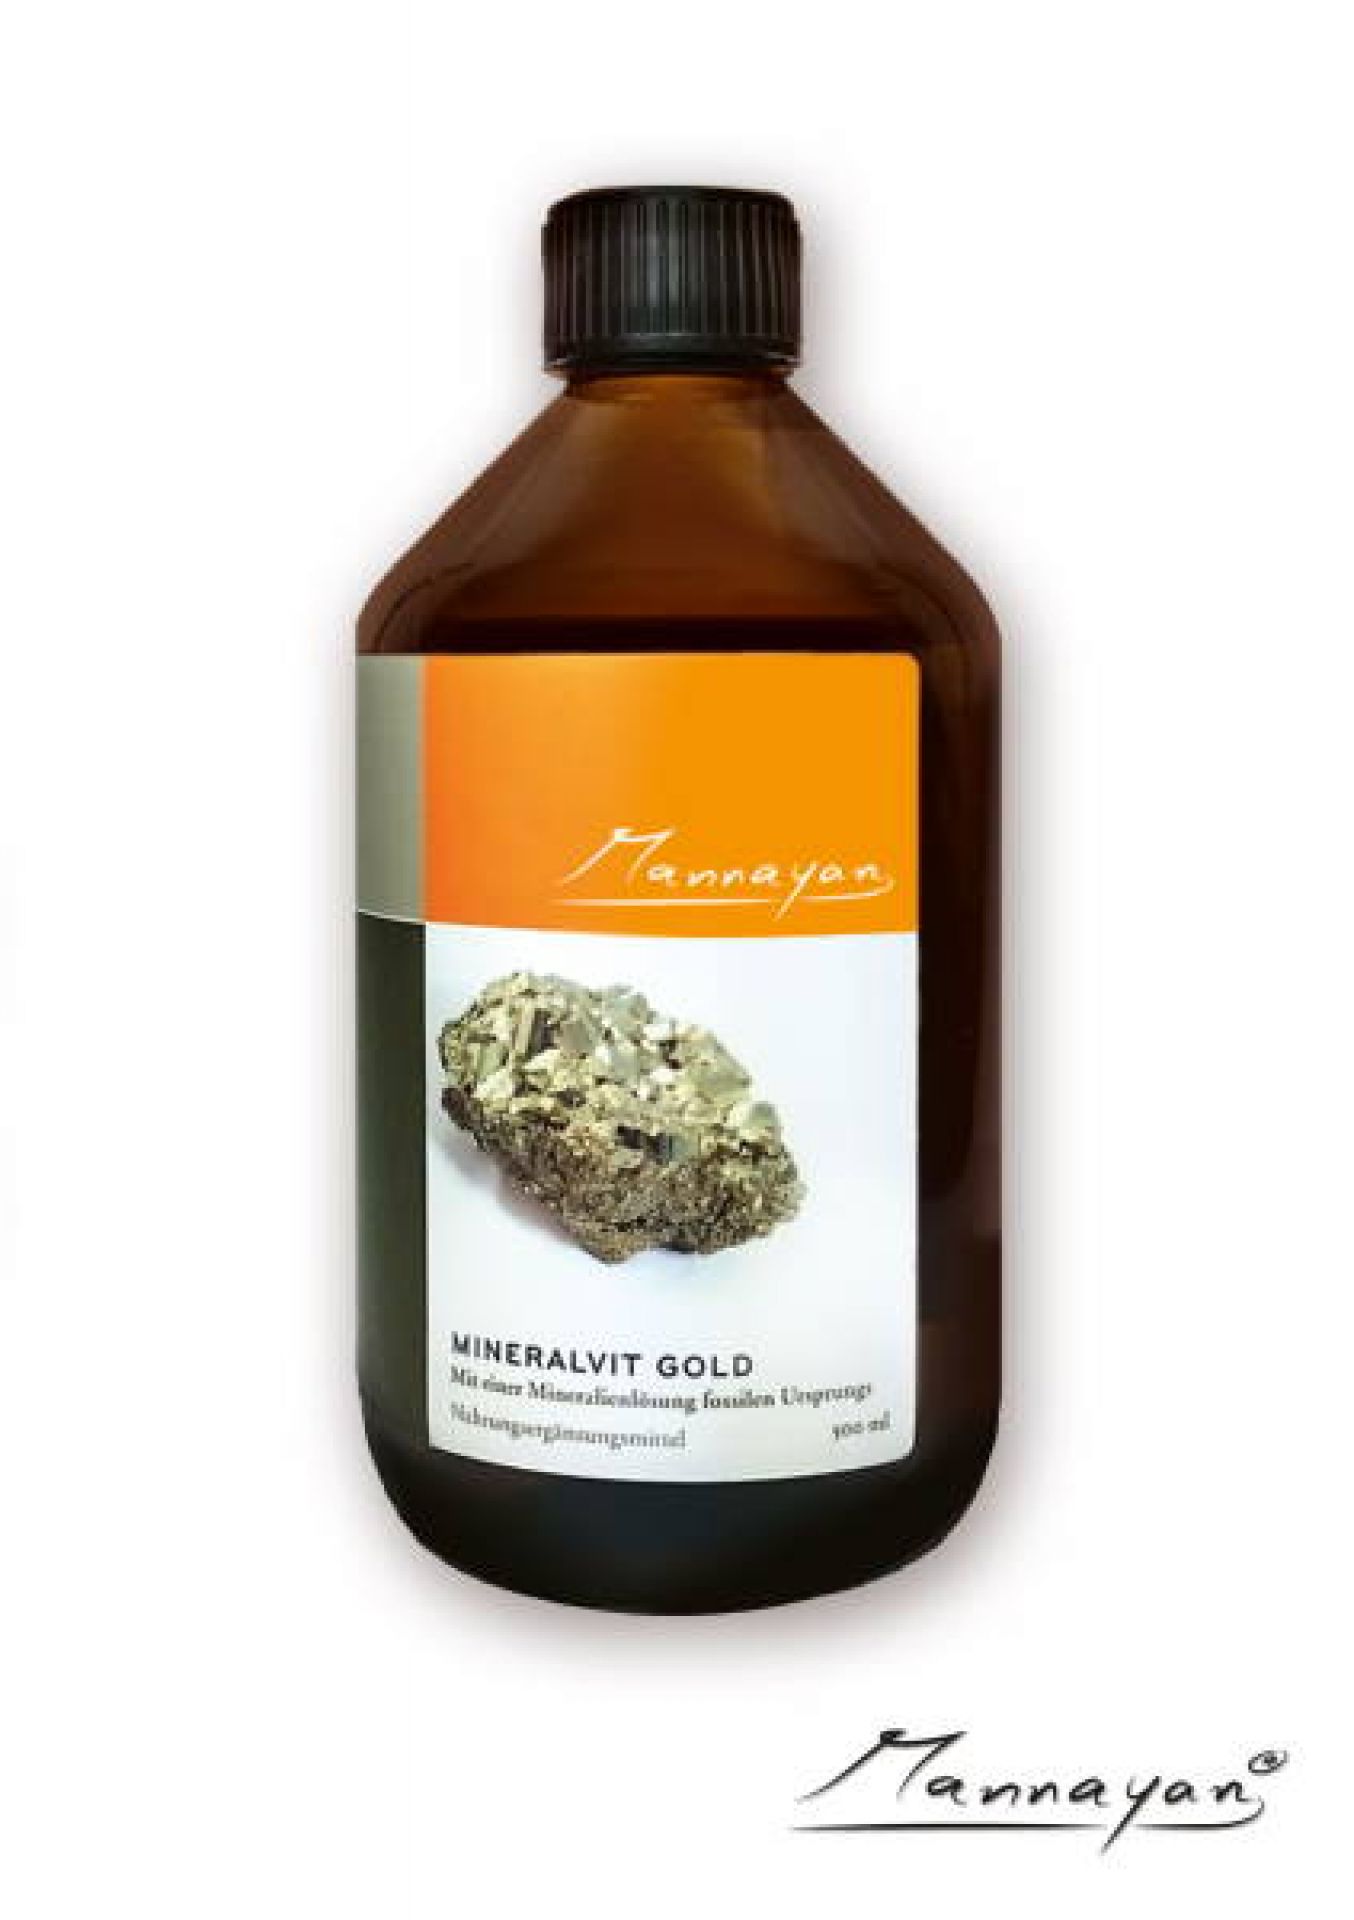 Mineralvit-GOLD 500 ml von Mannayan